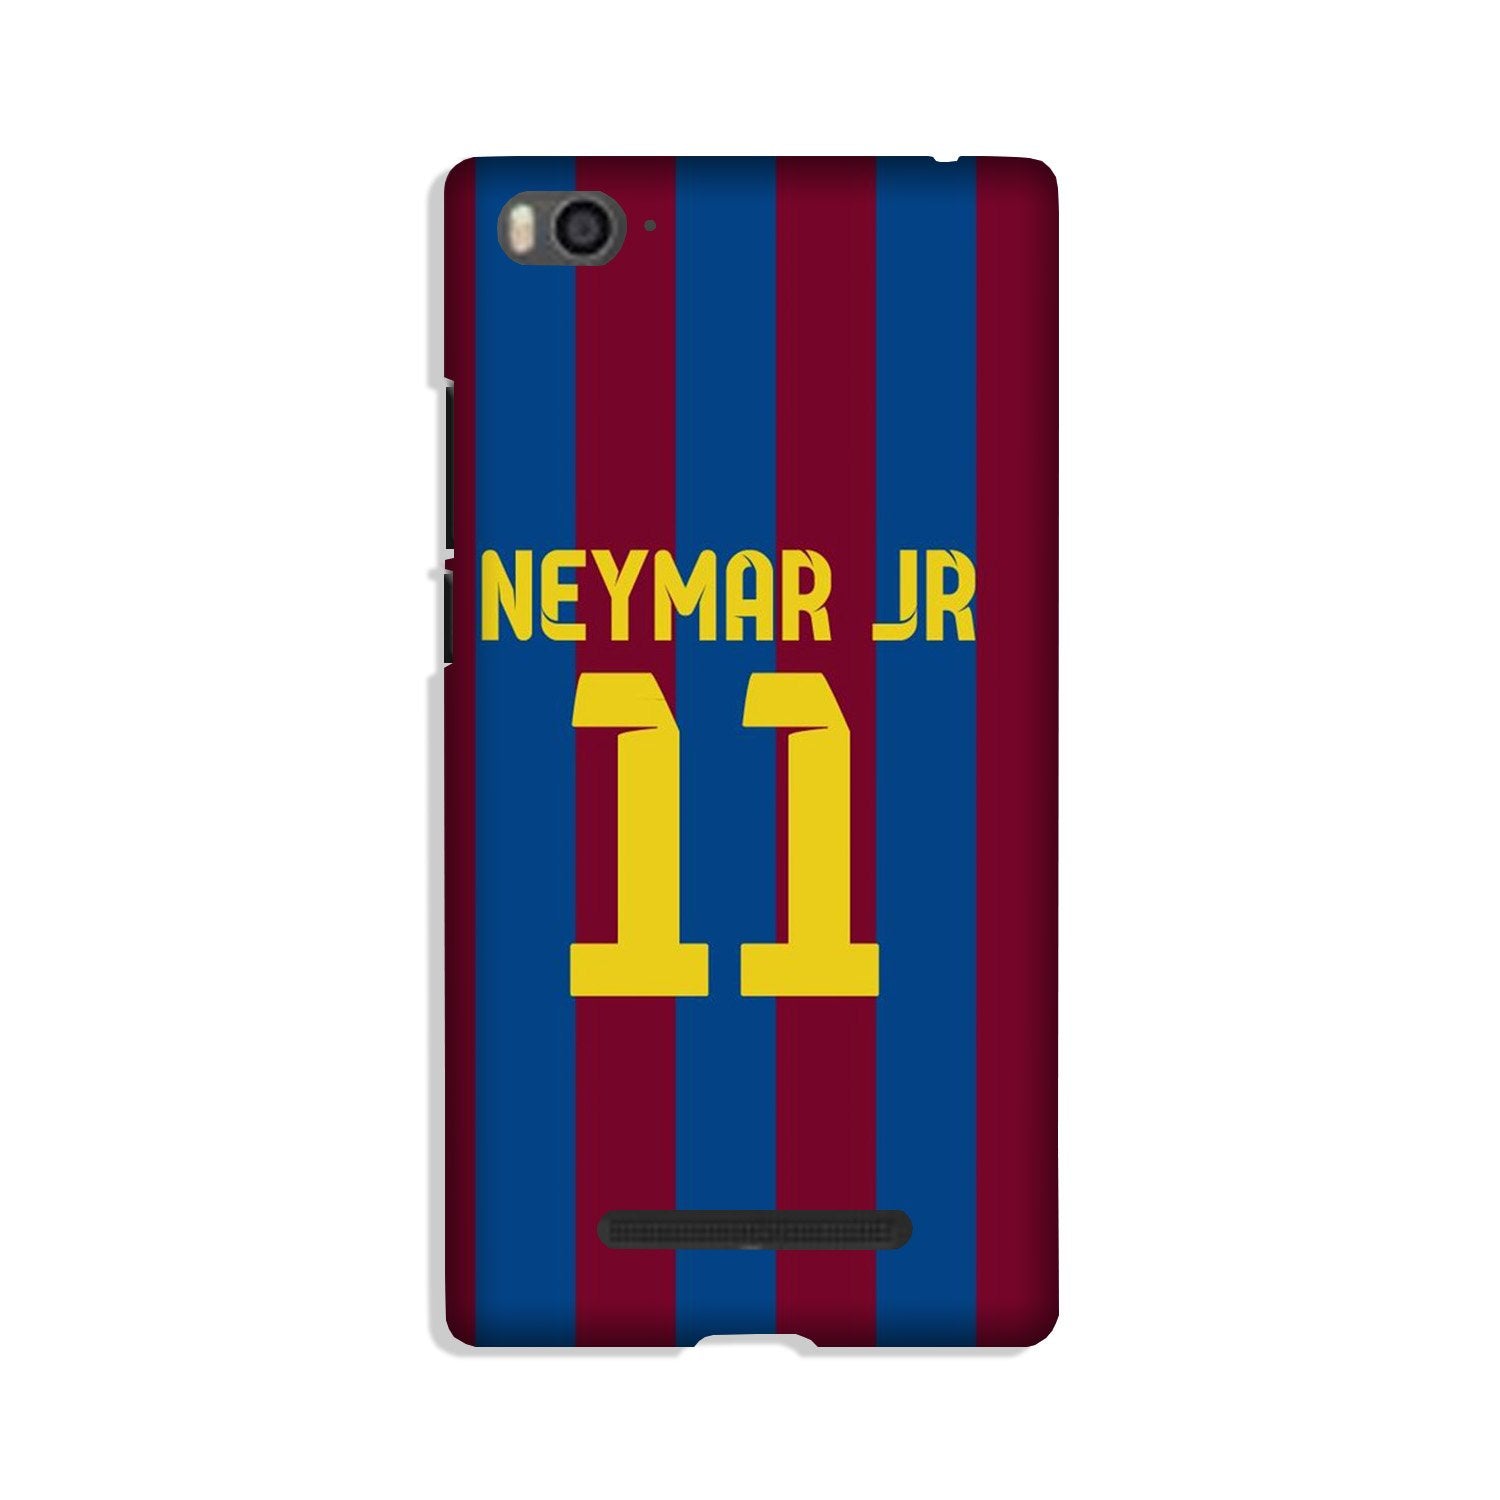 Neymar Jr Case for Redmi 4A(Design - 162)